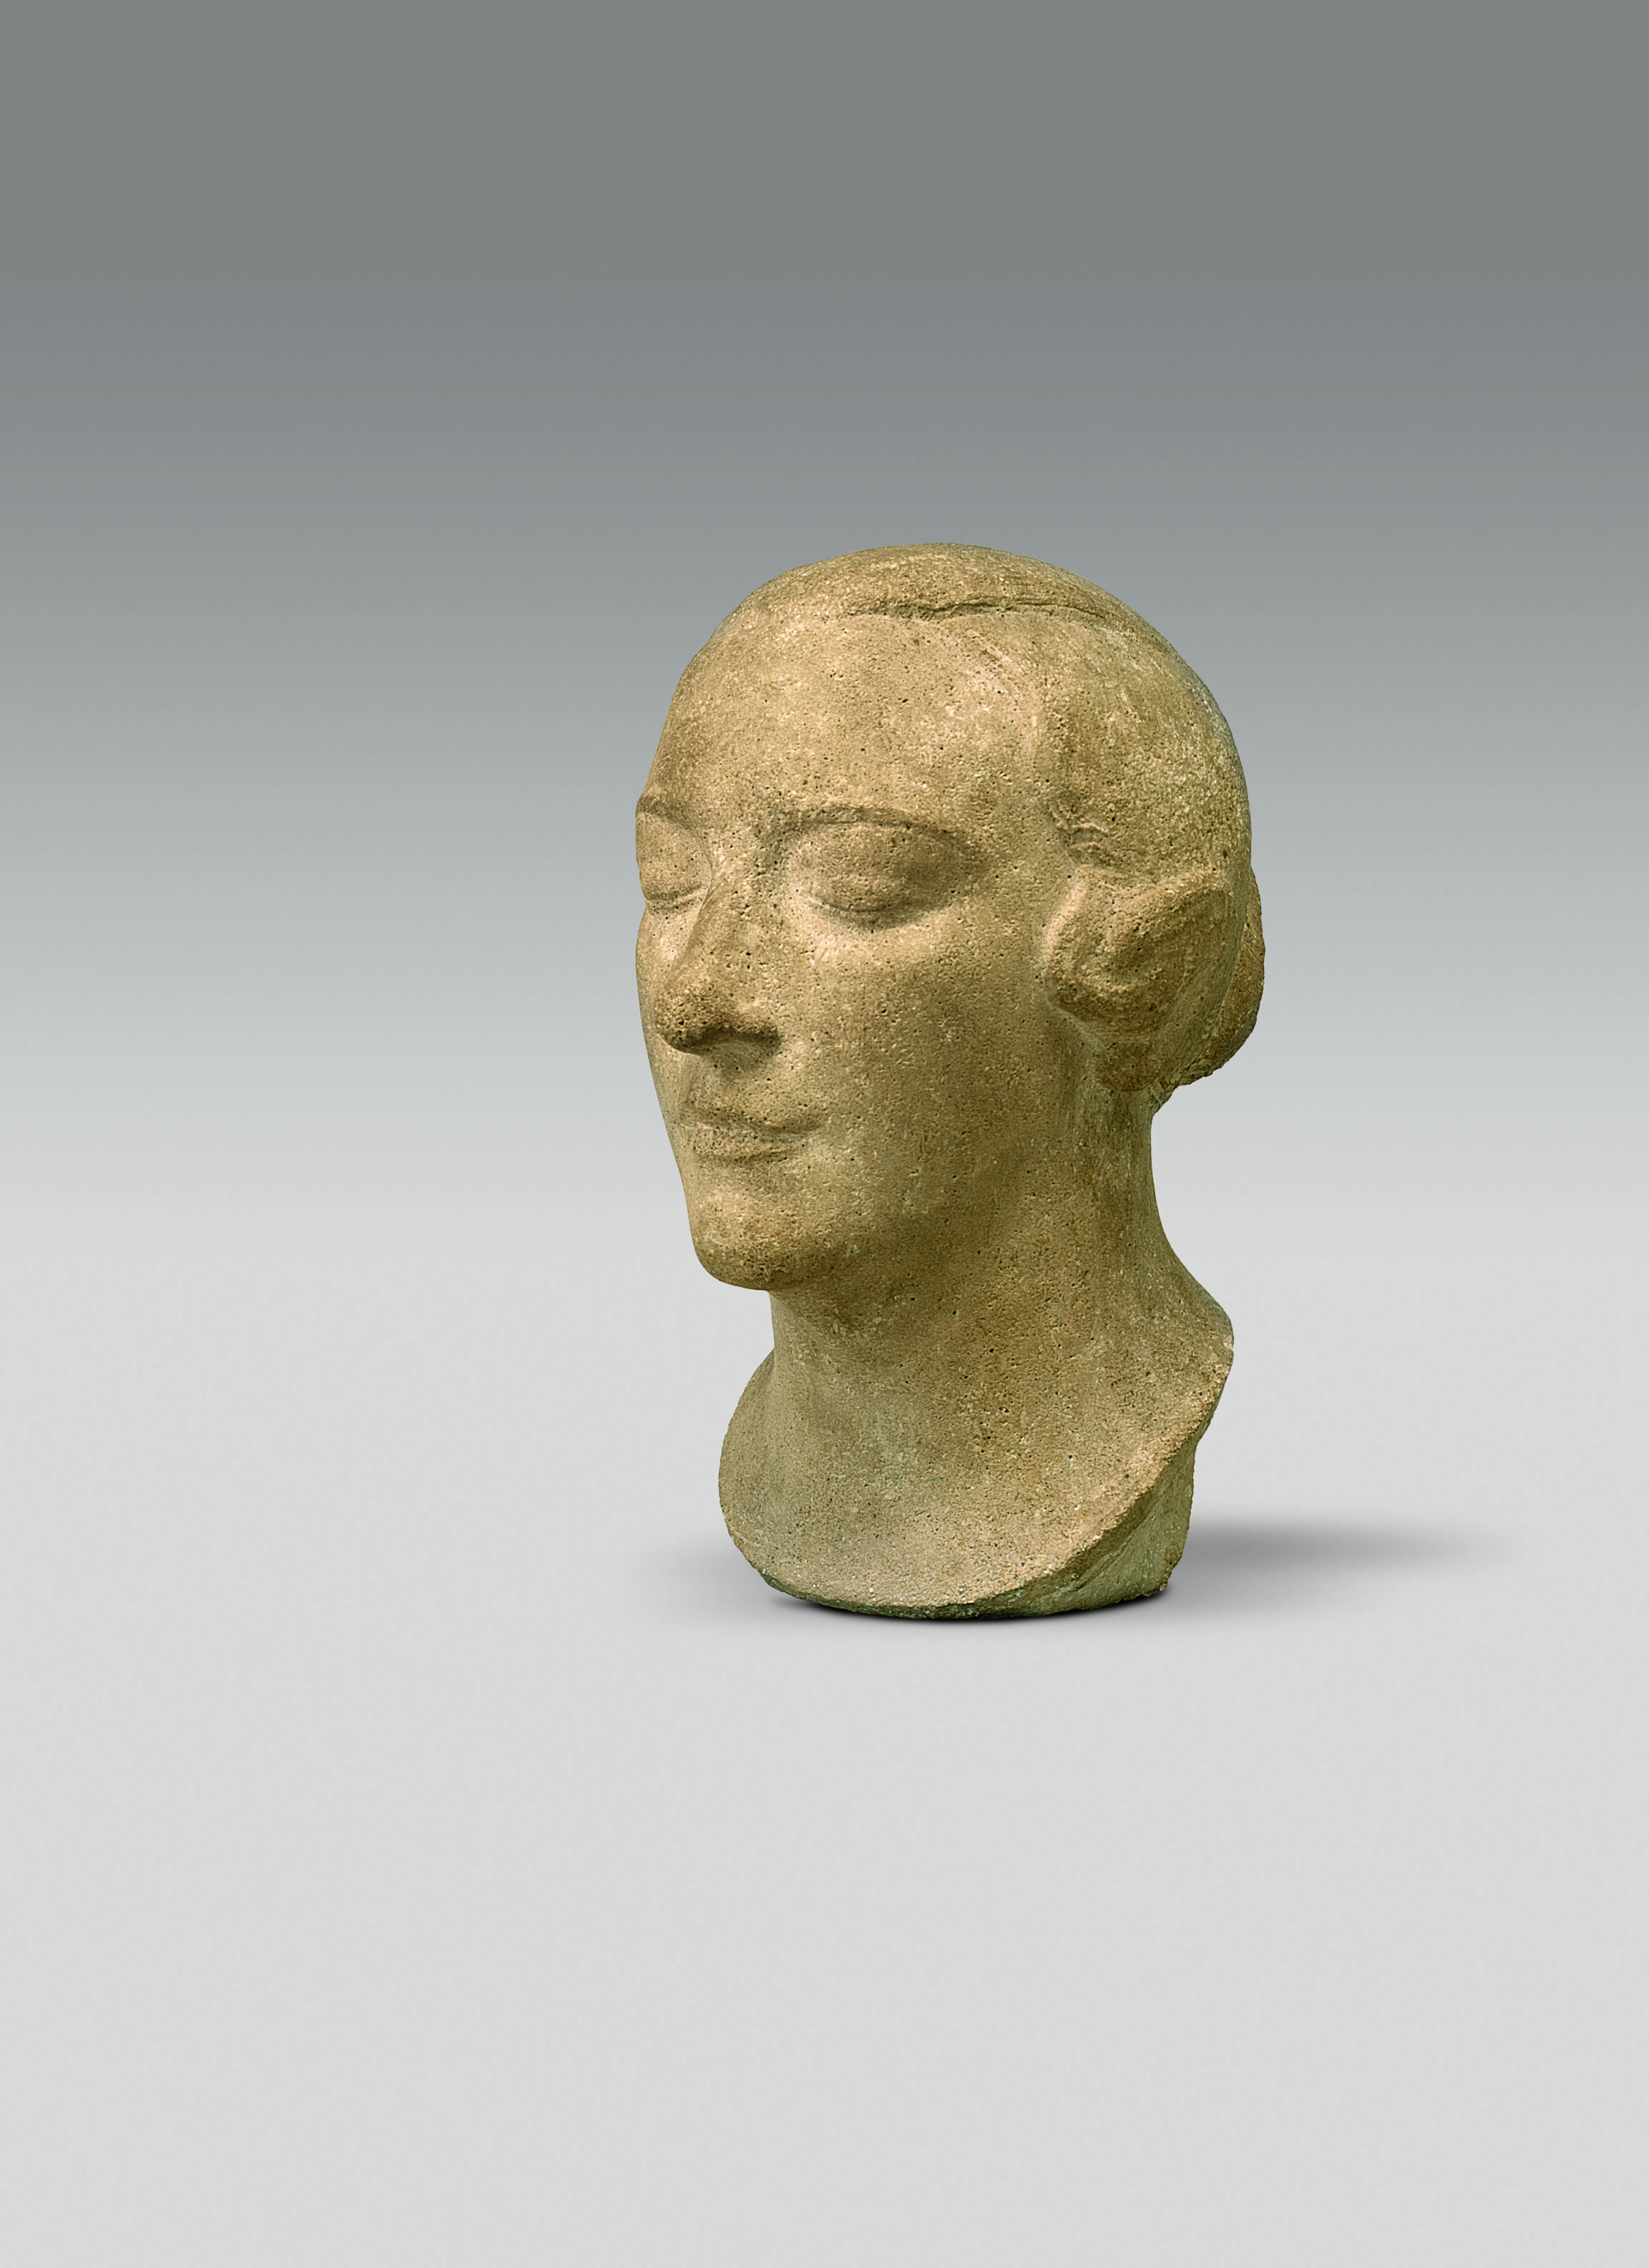 Charles Despiau , Buste de Madame André Derain (Bust of Madame André Derain), 1926